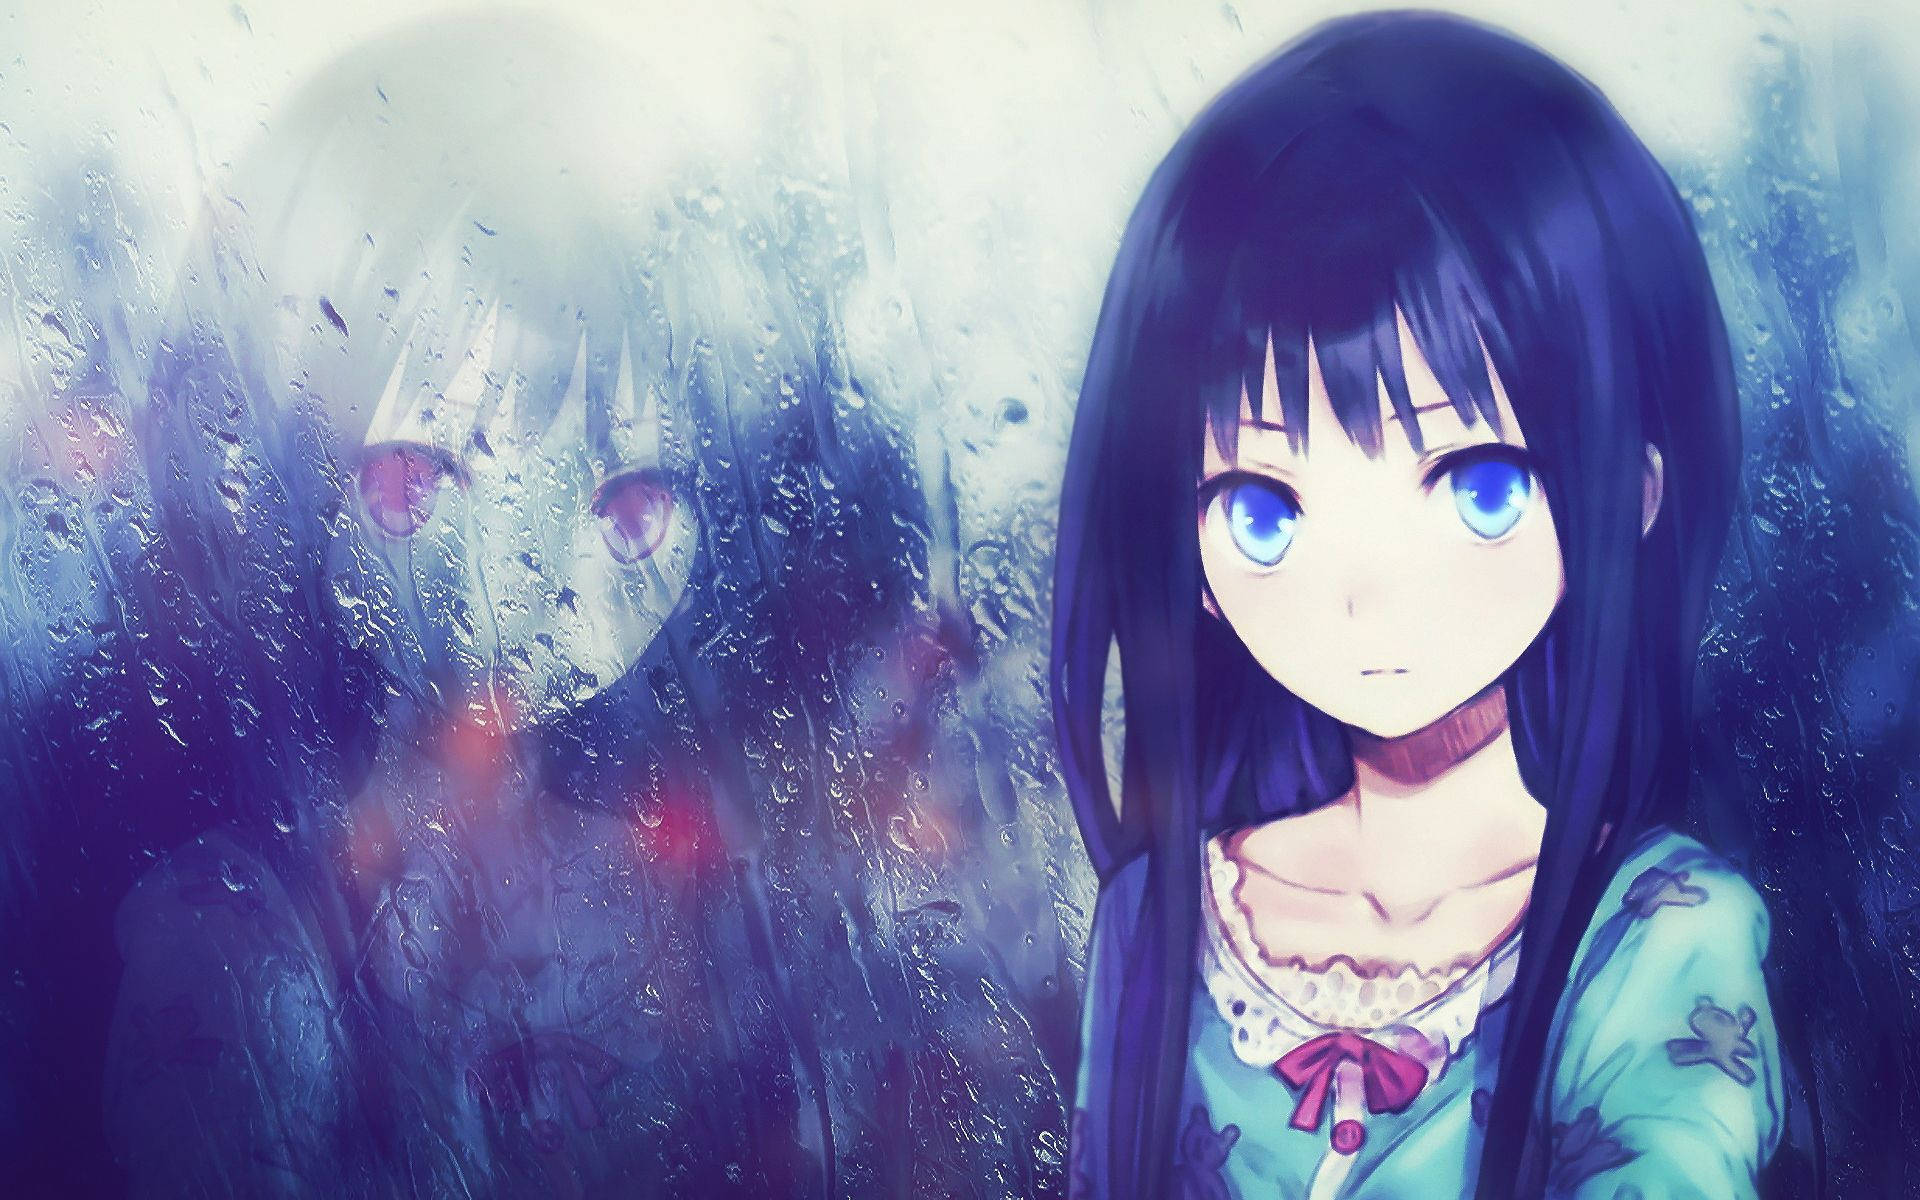 Sad Anime Girl Rain Reflection Wallpaper